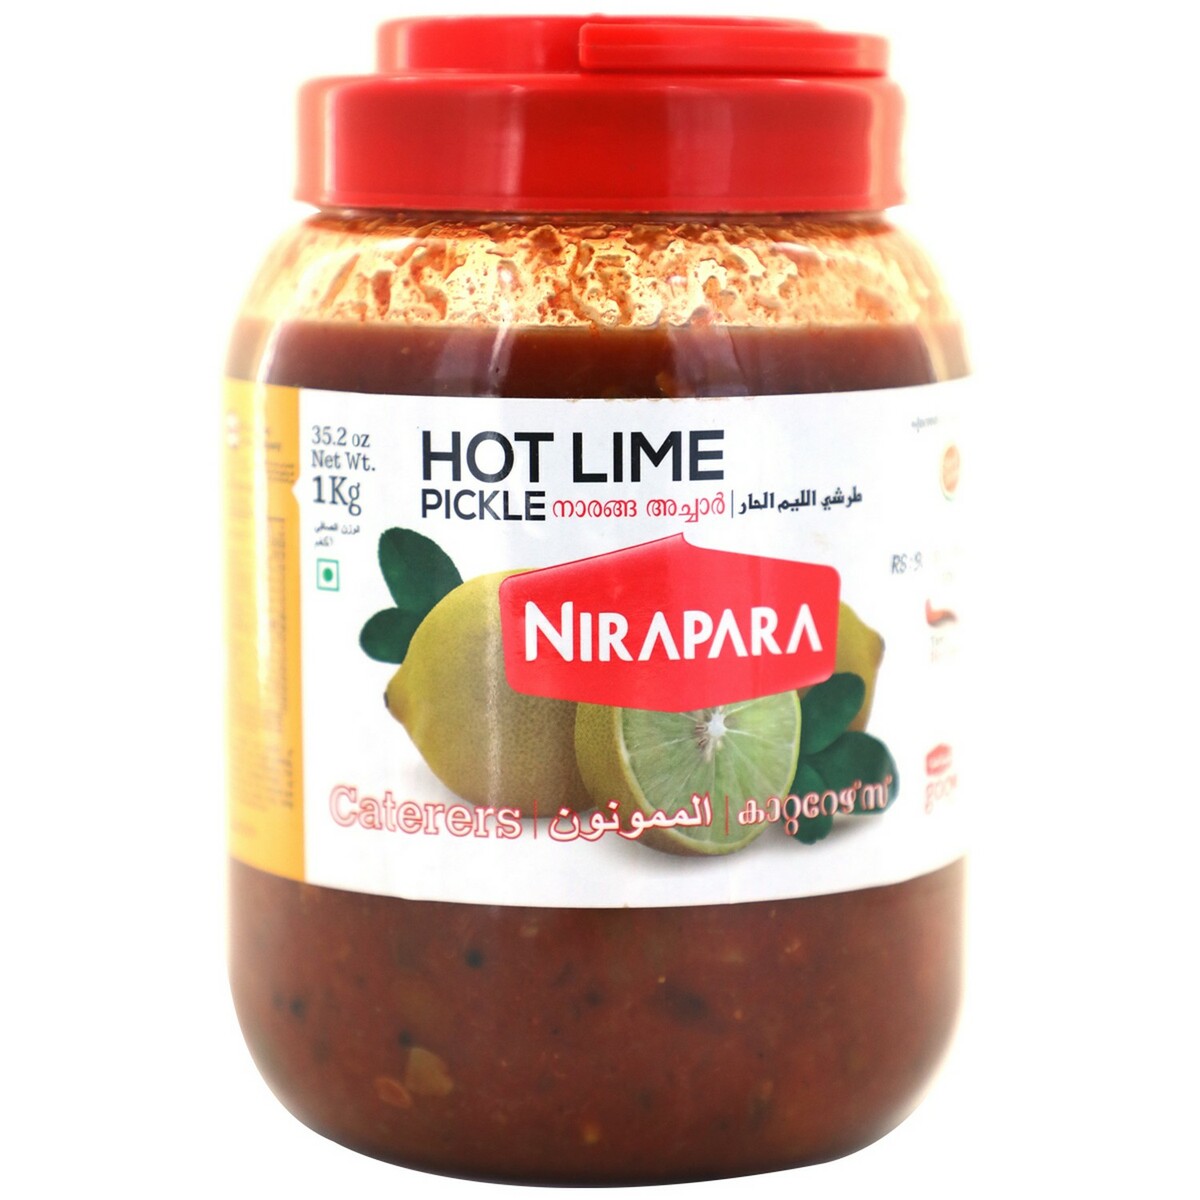 Nirapara Hot Lime Pickle Jar 1kg